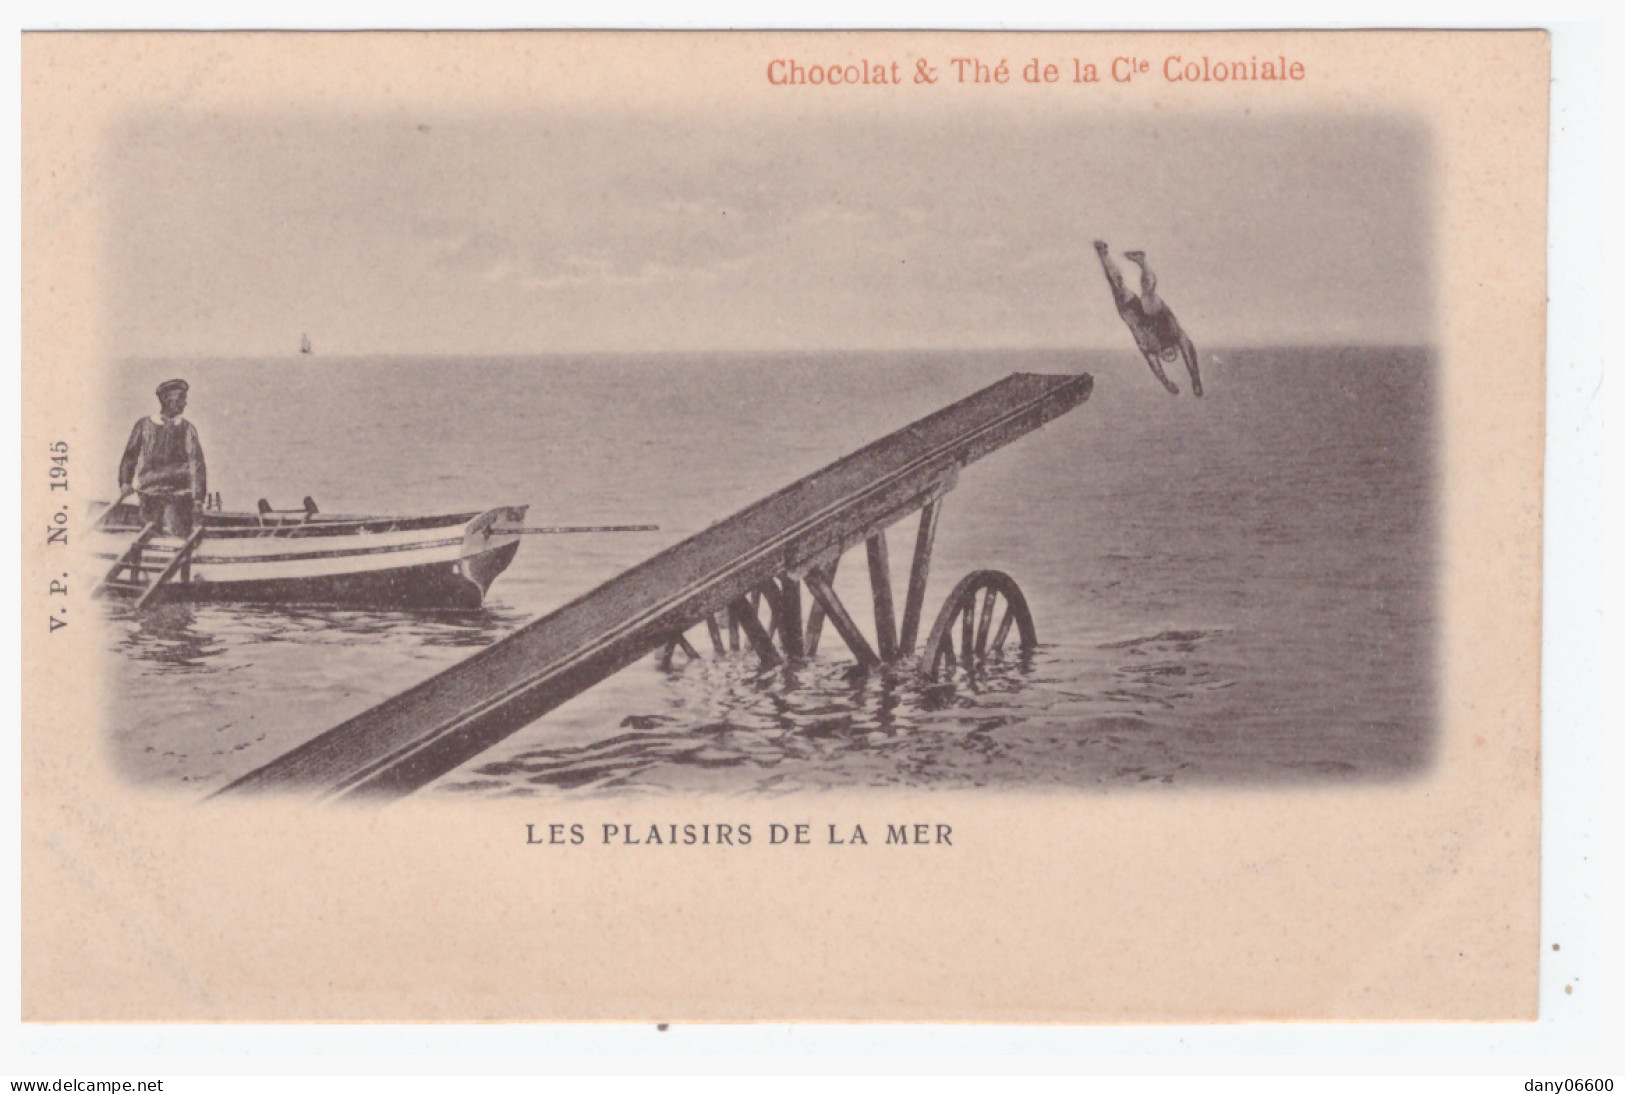  Les Plaisirs De La Mer - CHOCOLAT & THE DE LA Cie COLONIALE  (carte Animée) - Schwimmen